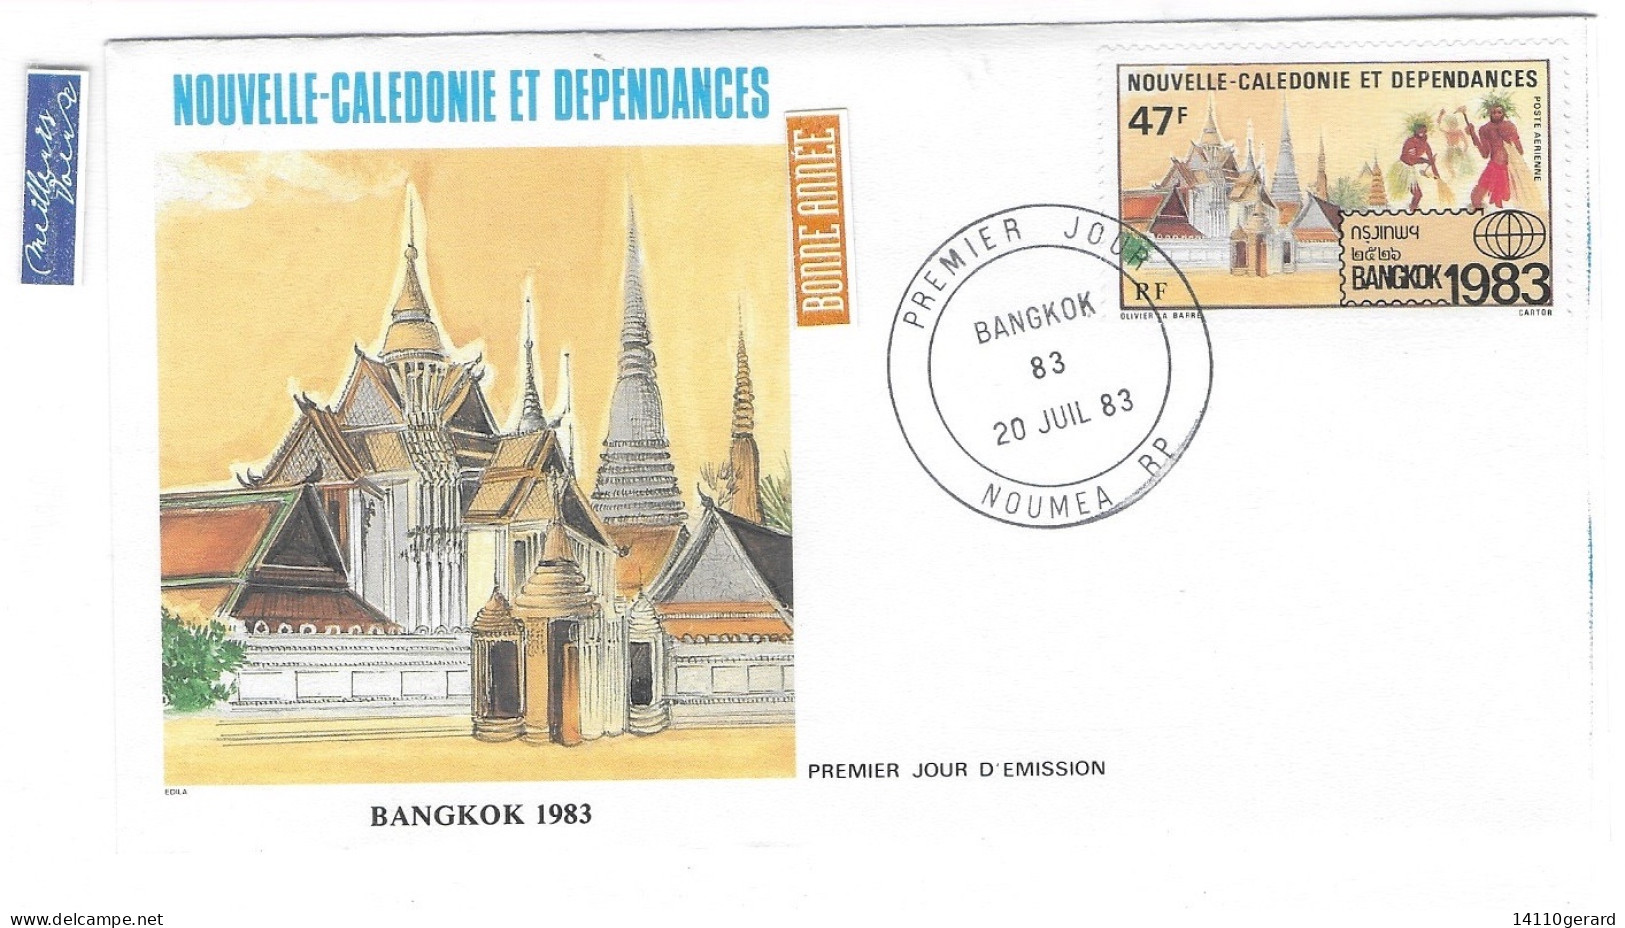 NOUVELLE-CALÉDONIE ET DÉPENDANCES BANGKOK 1983 20 JUILLET 1983 - Covers & Documents